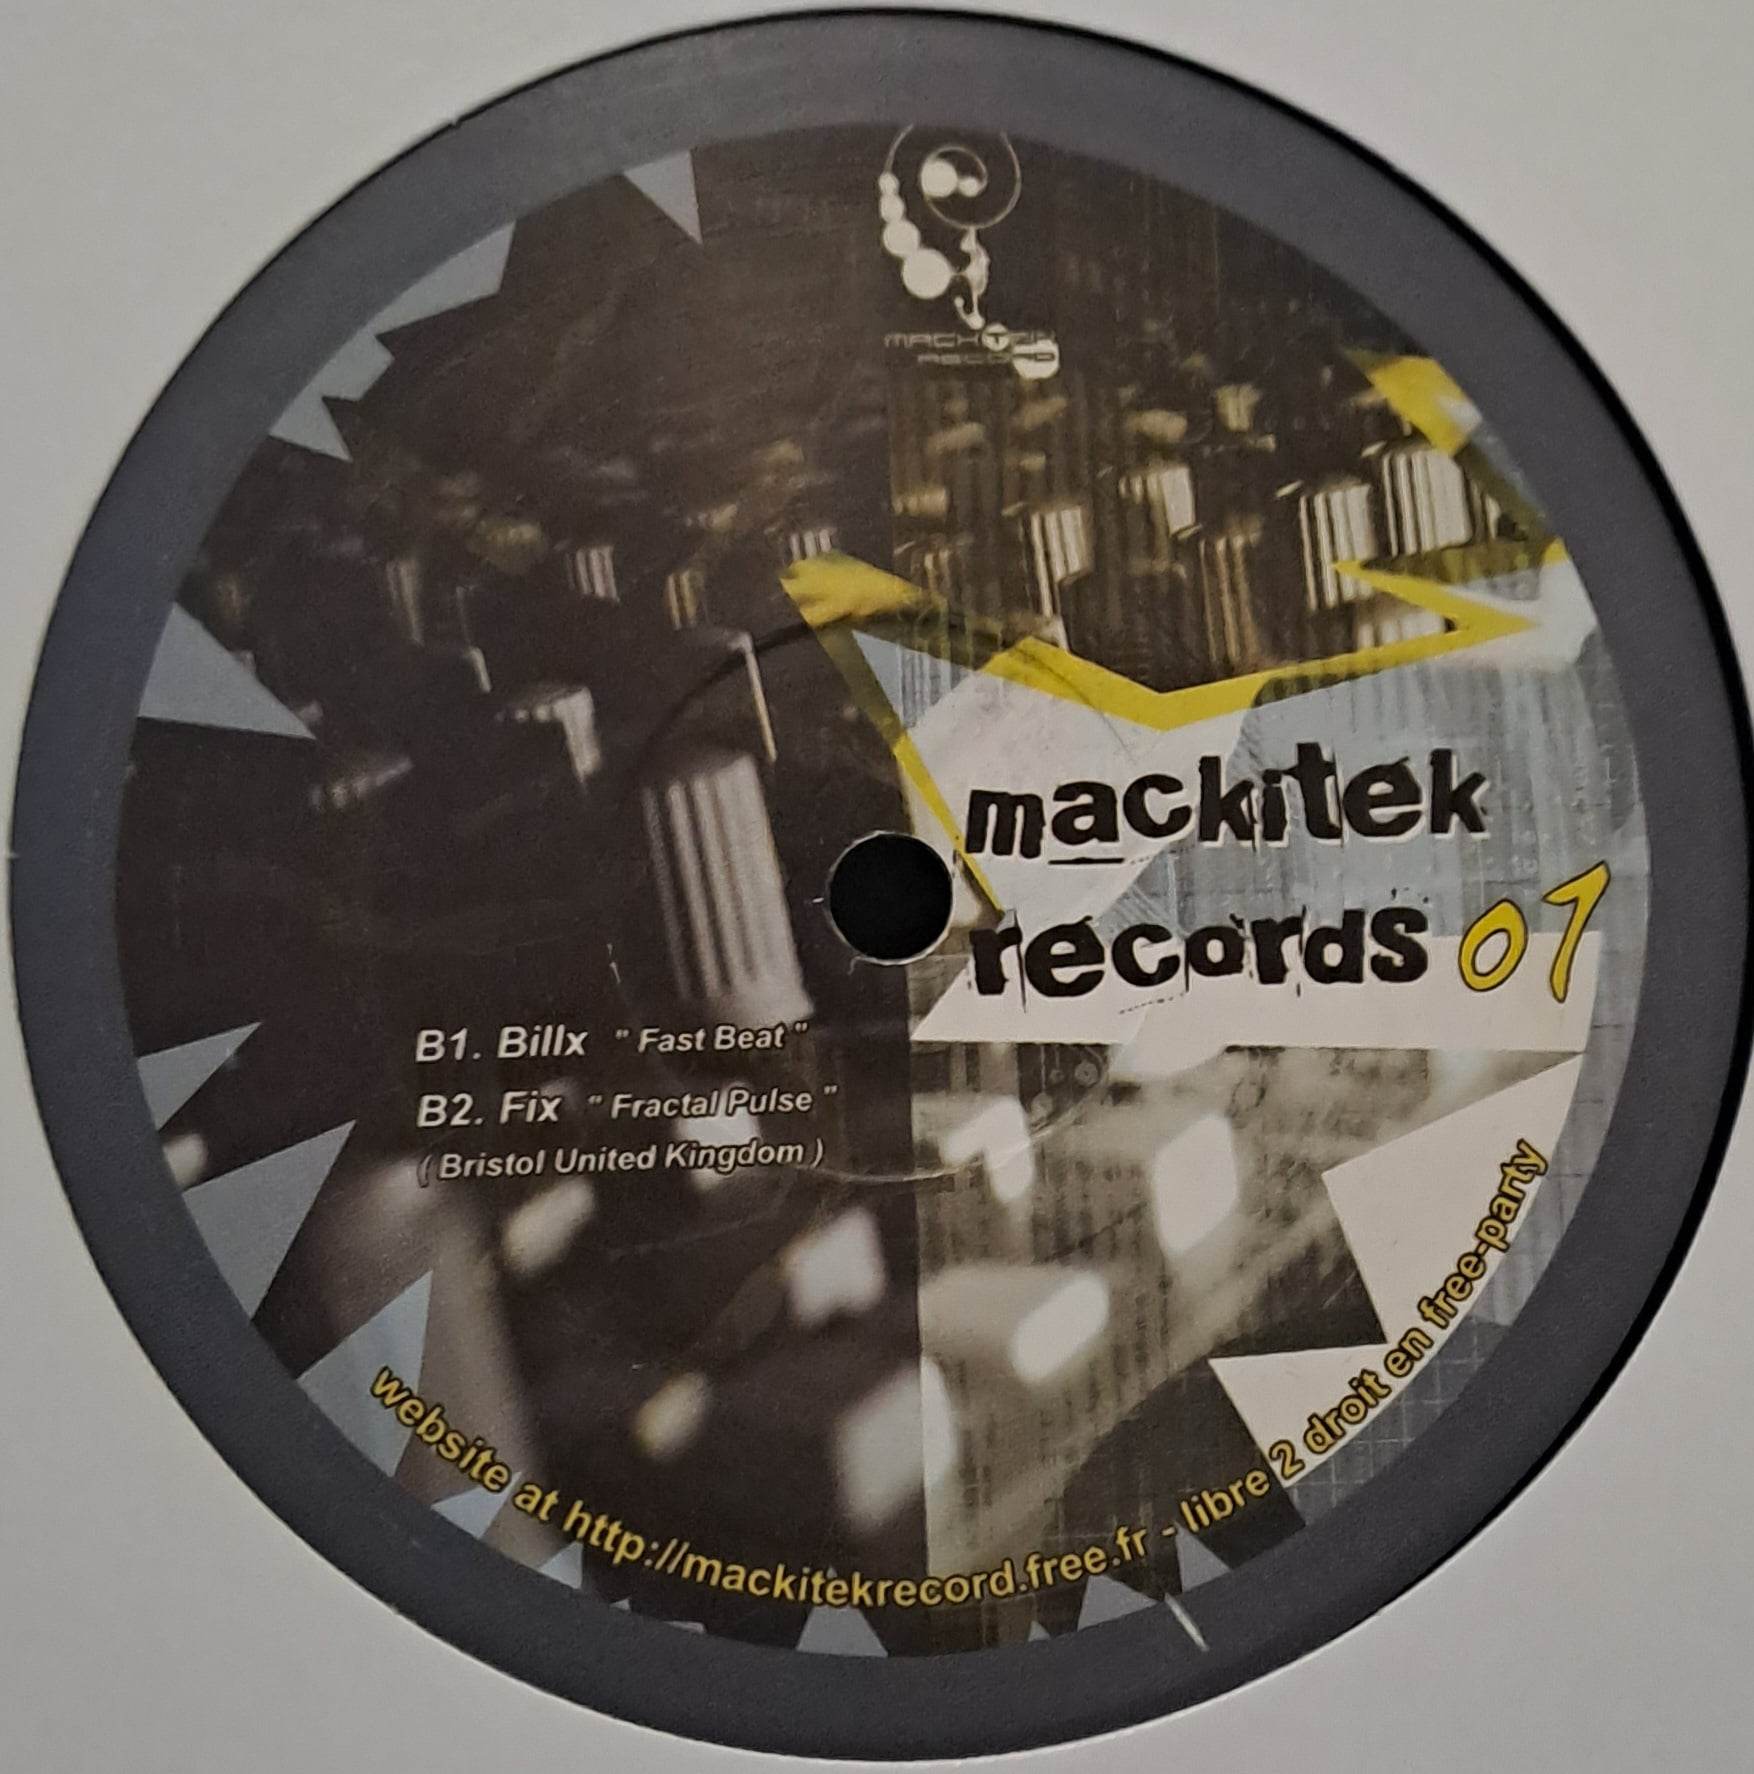 Mackitek 01 - vinyle freetekno